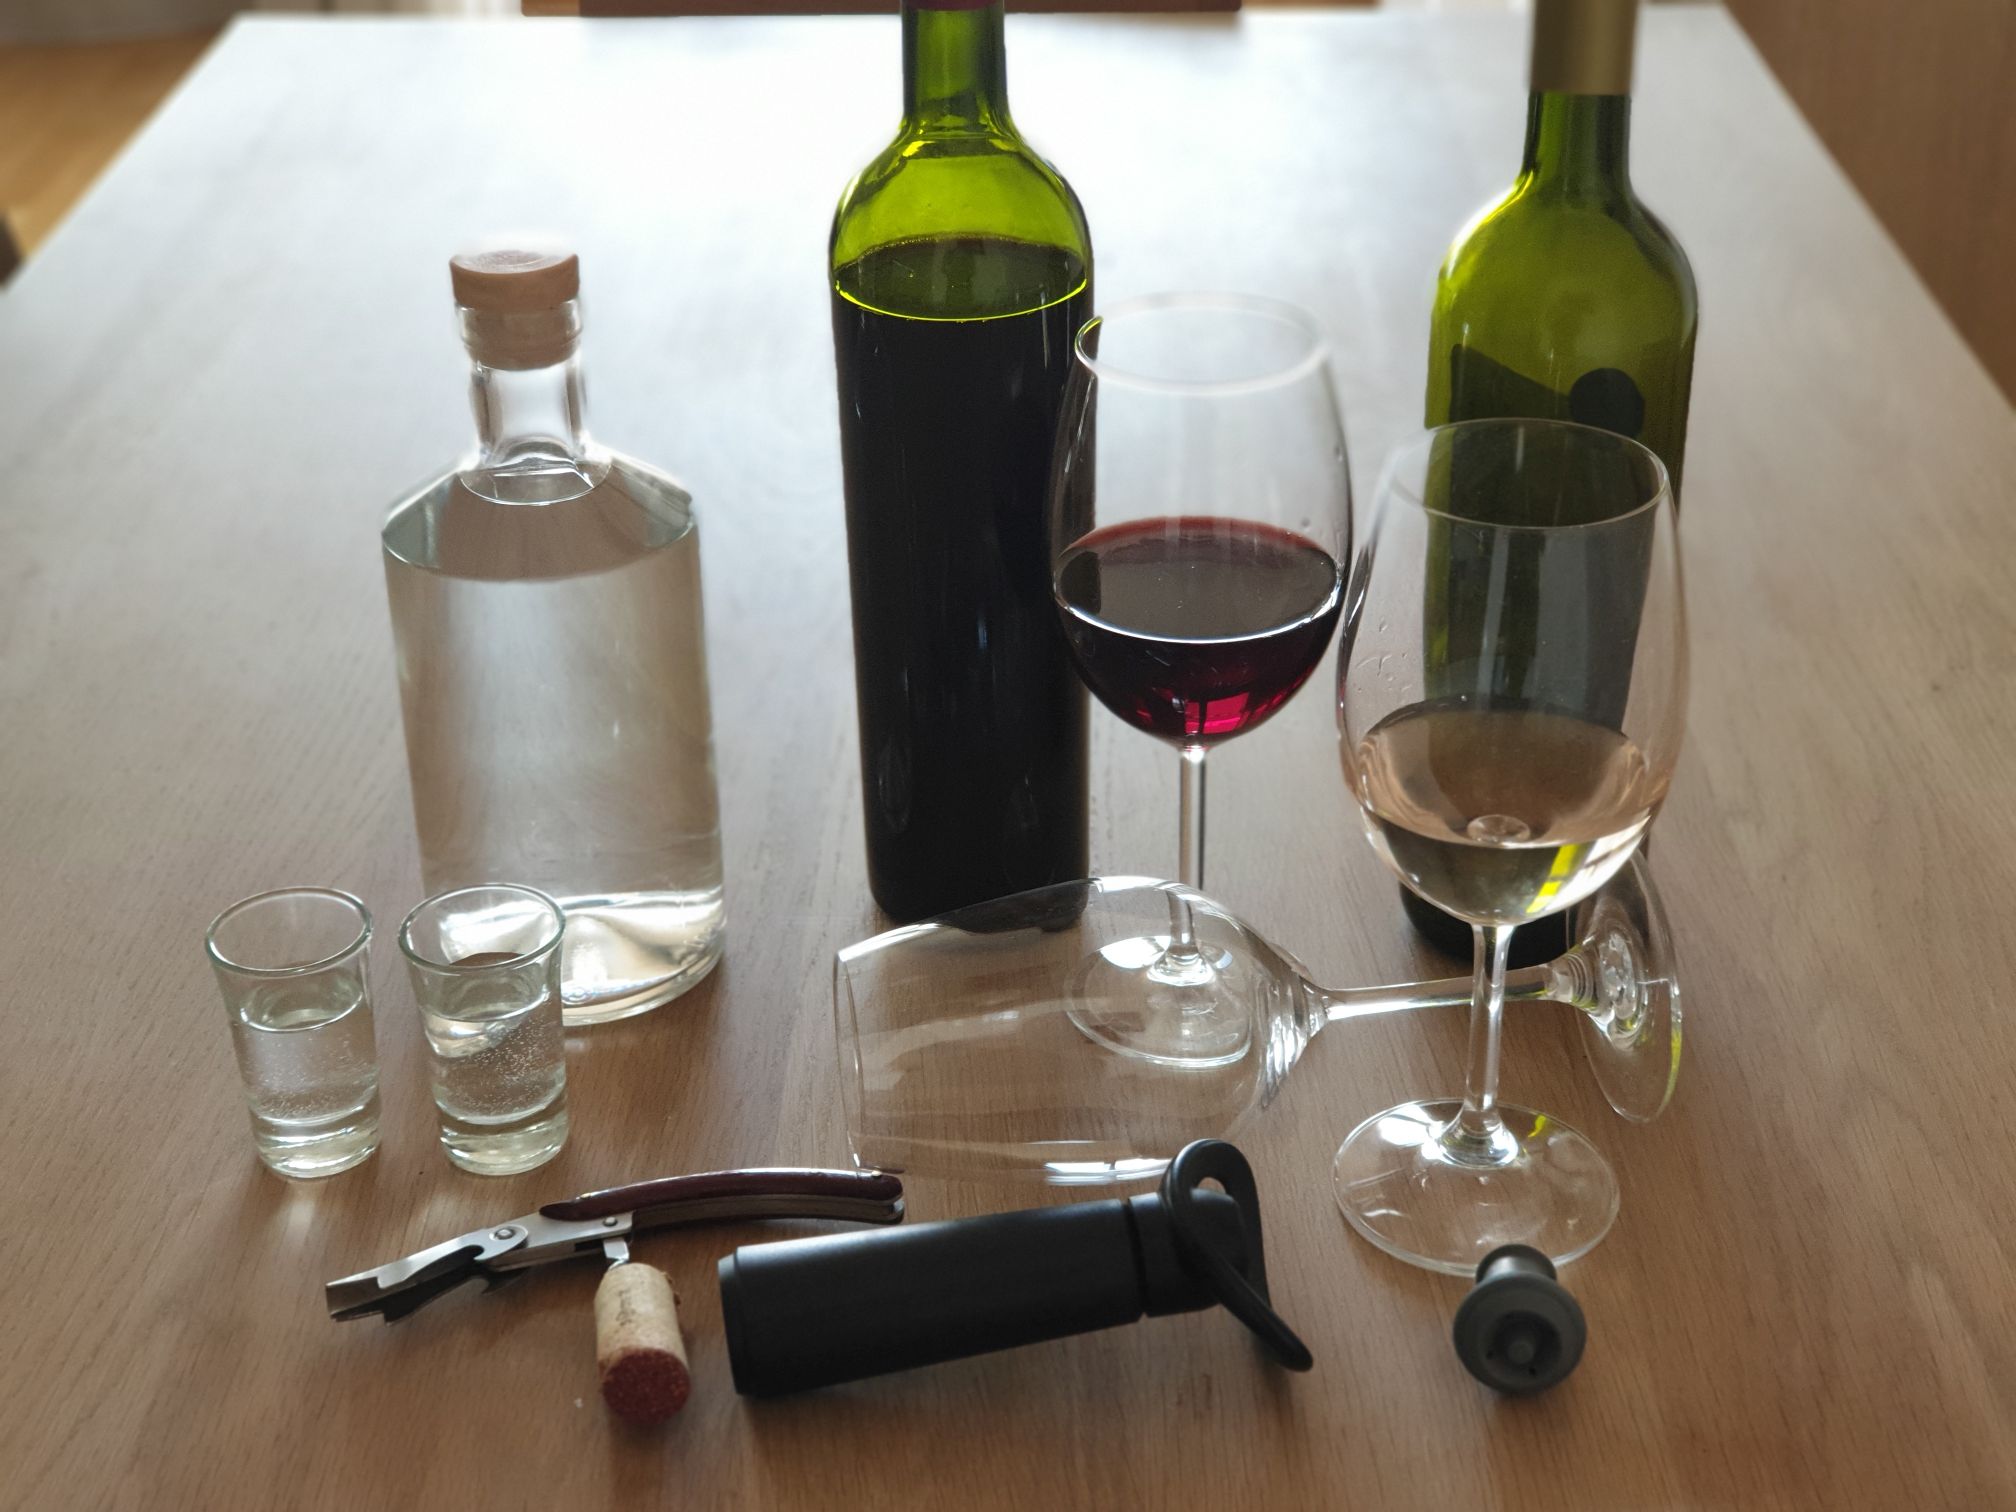 RS: Podsticaji za unapredjenje kvaliteta vina i rakije